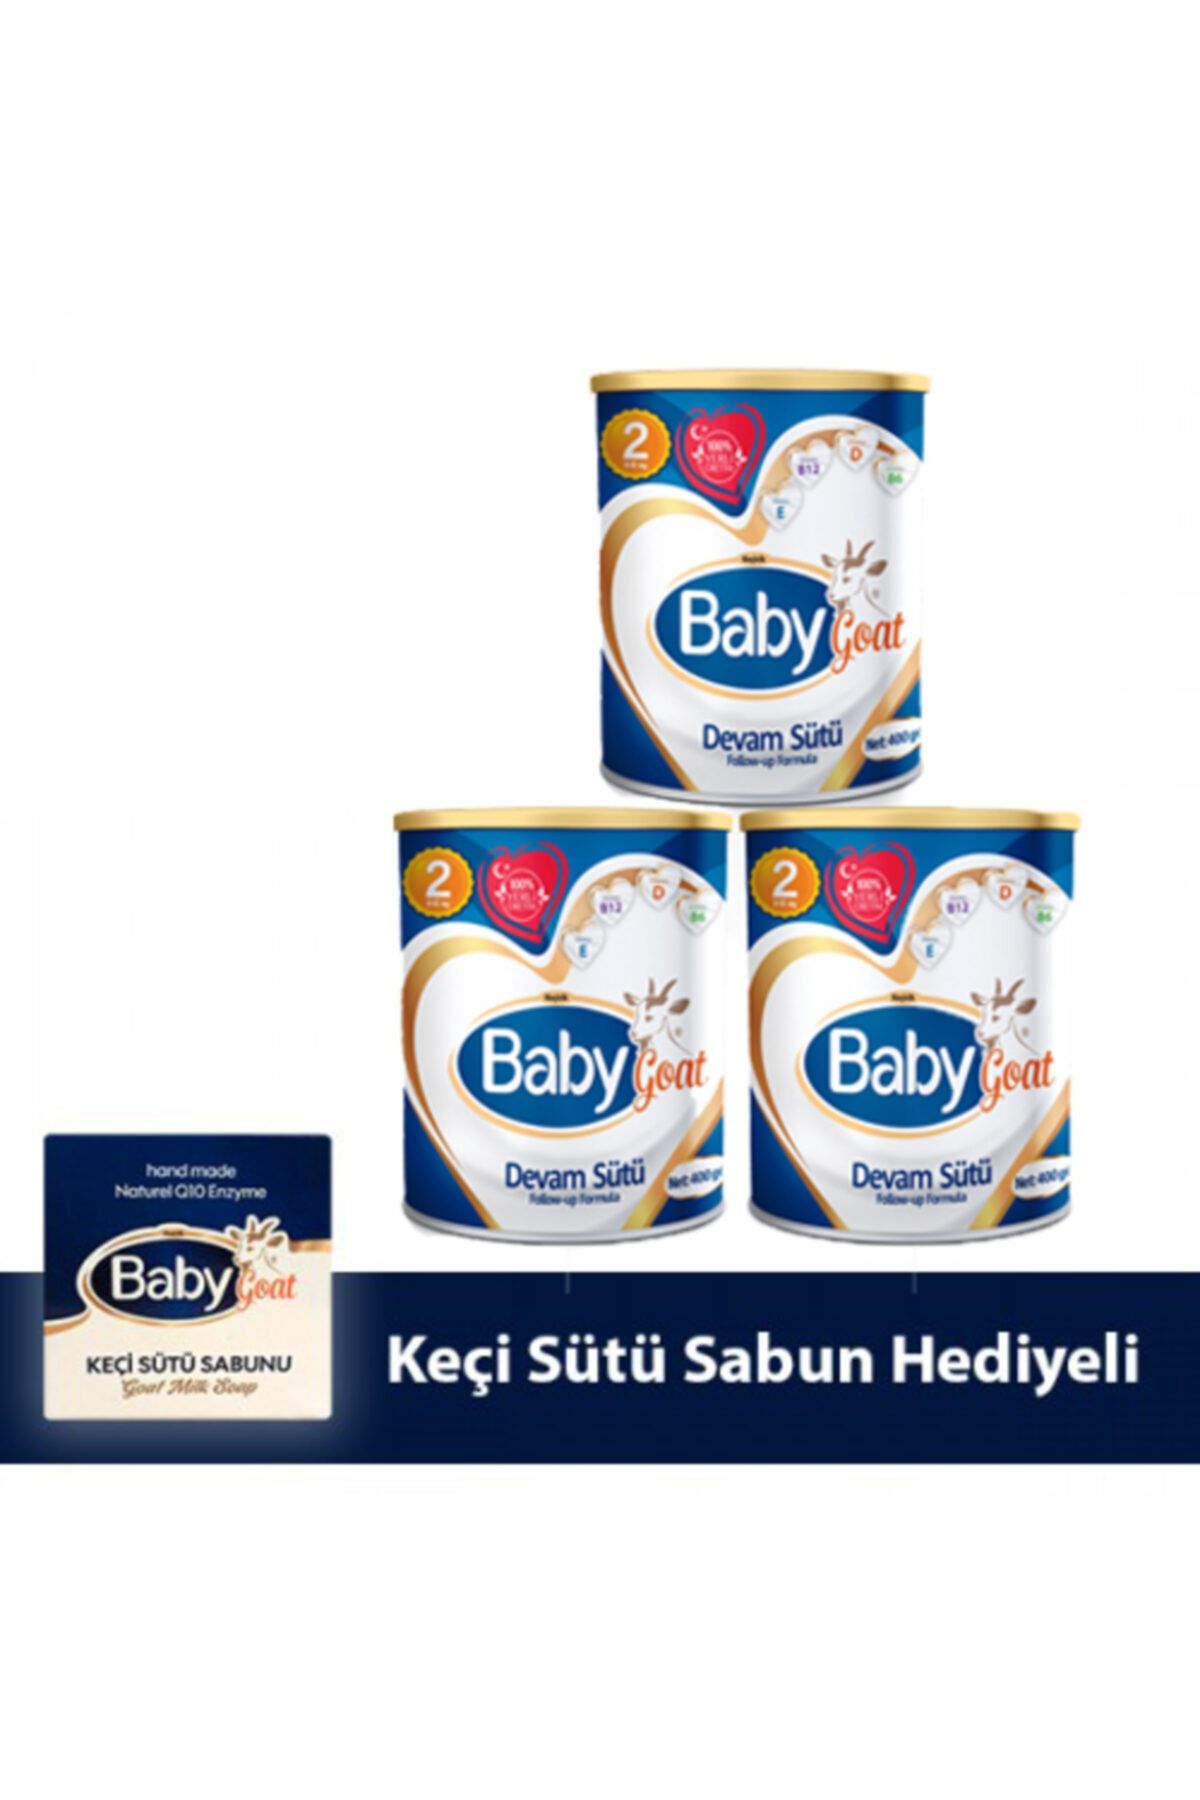 Baby Goat 2 Keçi Sütü Bazlı Devam Sütü 400 gr 3 Lü ( Sabun Hediyeli )